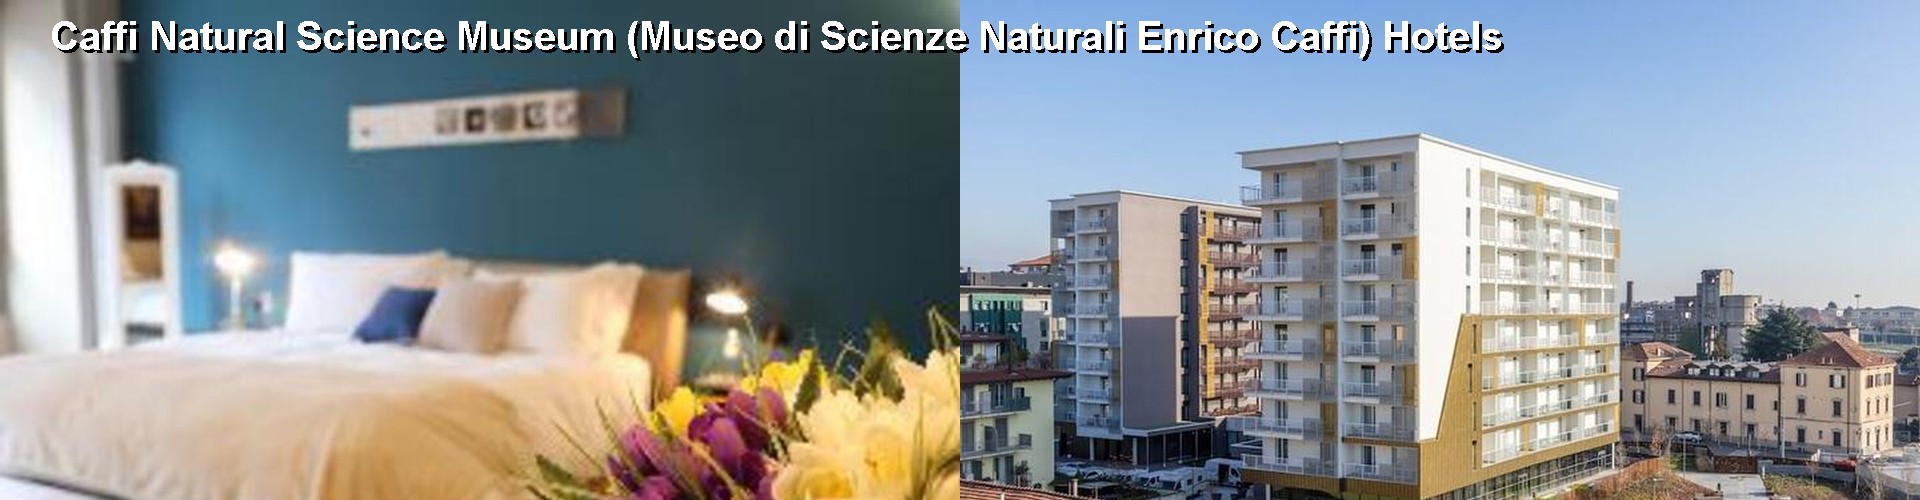 5 Best Hotels near Caffi Natural Science Museum (Museo di Scienze Naturali Enrico Caffi)